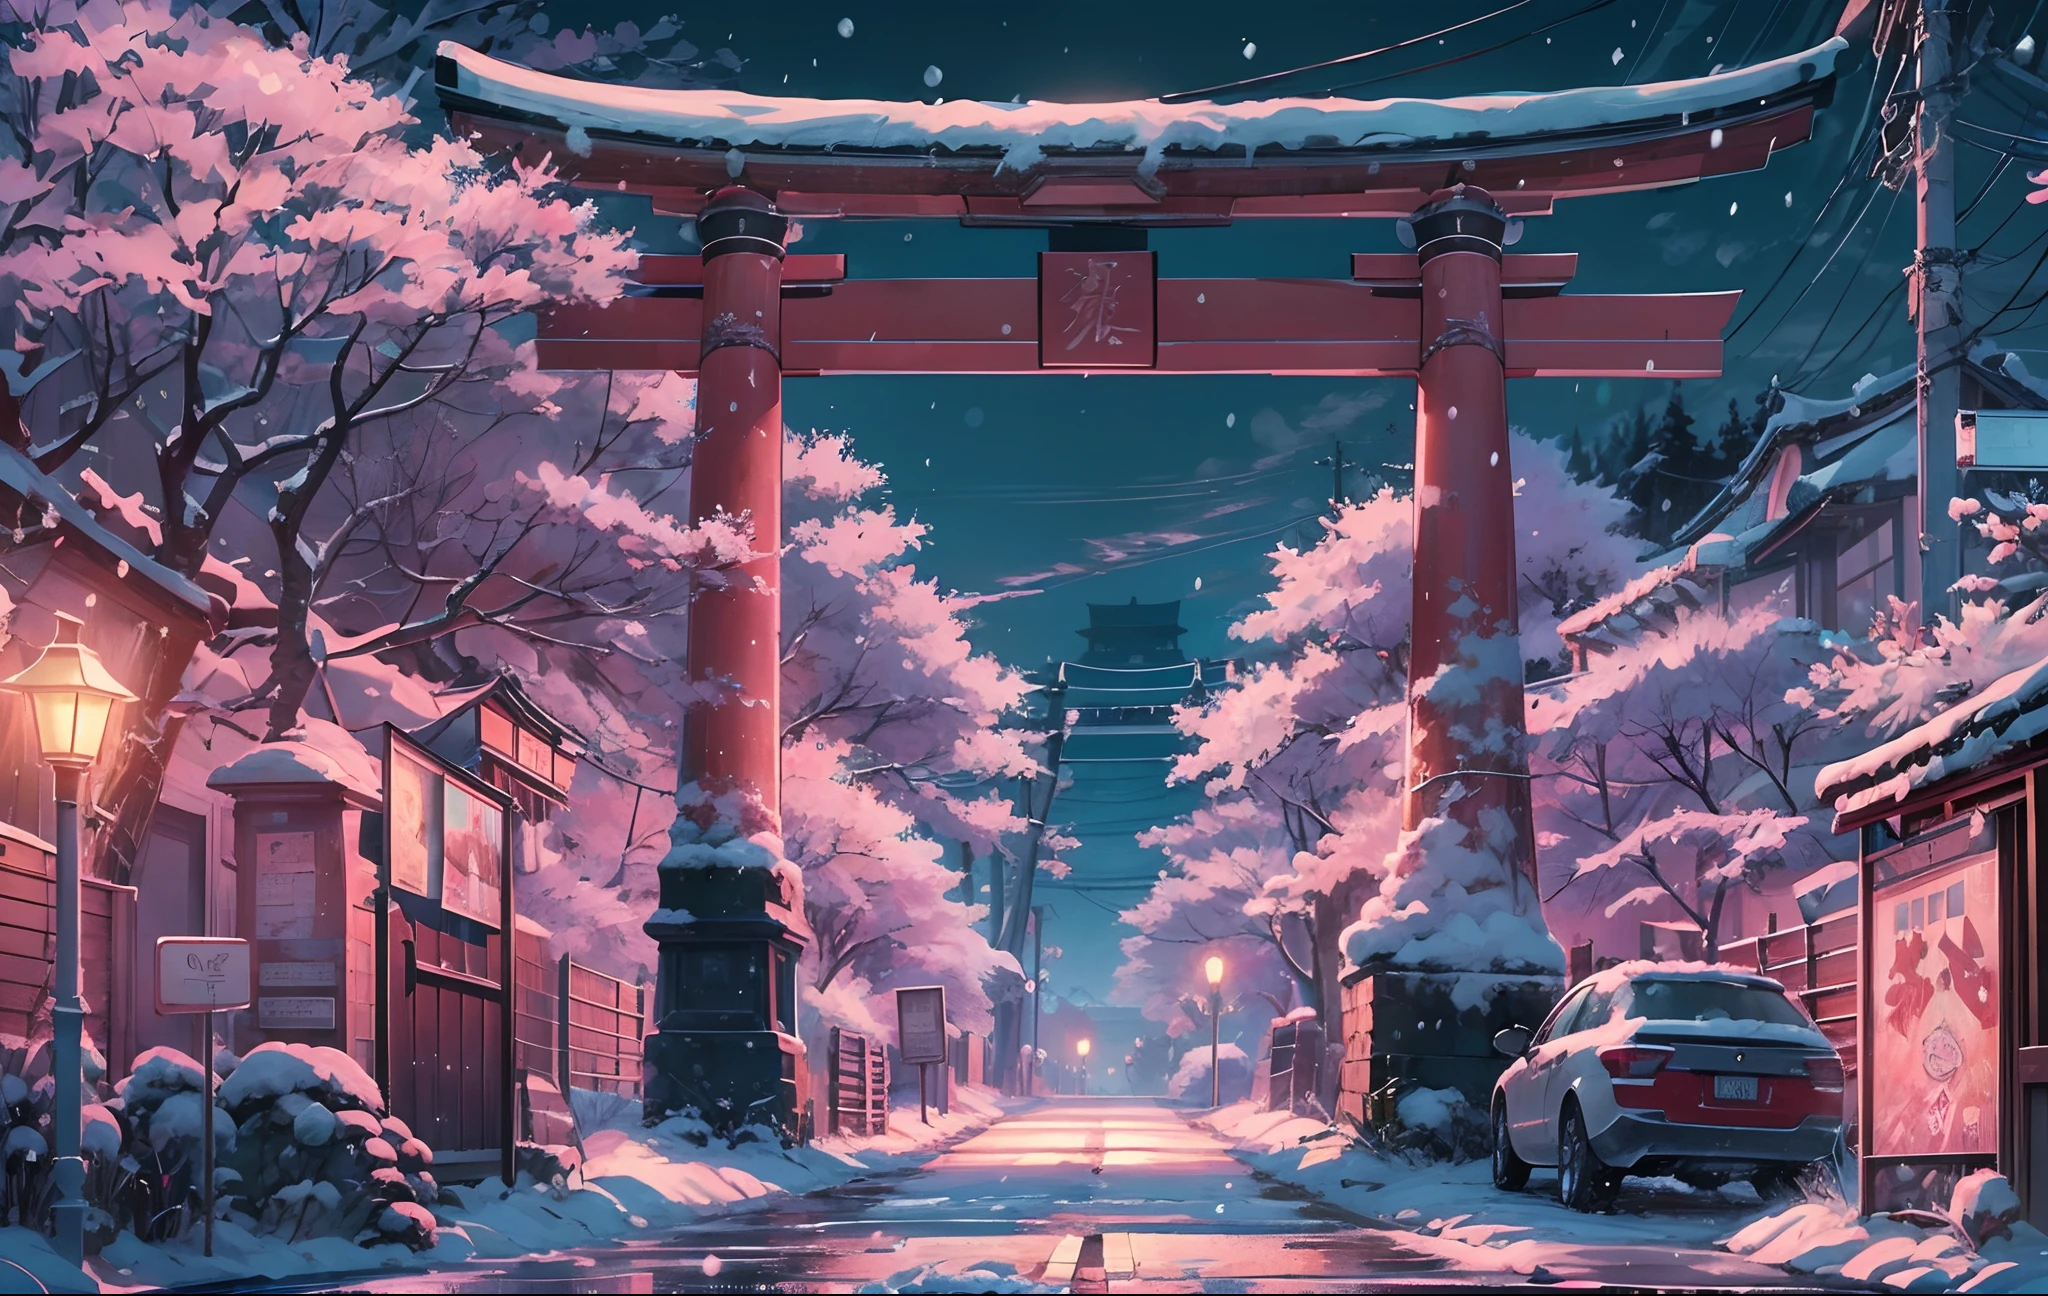 걸작, 컨셉 아트, 와이드 샷, 파노라마, (거리에 도리이가 있고 밤에는 낙서로 가득한 거리), (겨울), 눈 내리는, 상세한 매트 페인팅, By Makoto Shinkai, 와이드스크린 샷, 차도, 벚꽃나무가 늘어선 길, 미야자키의 애니메이션 영화, 끝없는 밤, 거리의 벚꽃나무, 컬러로 보는 영화 예술, 상세한 디지털 애니메이션 아트, (서사적 구성, 서사시적인 비율), HD